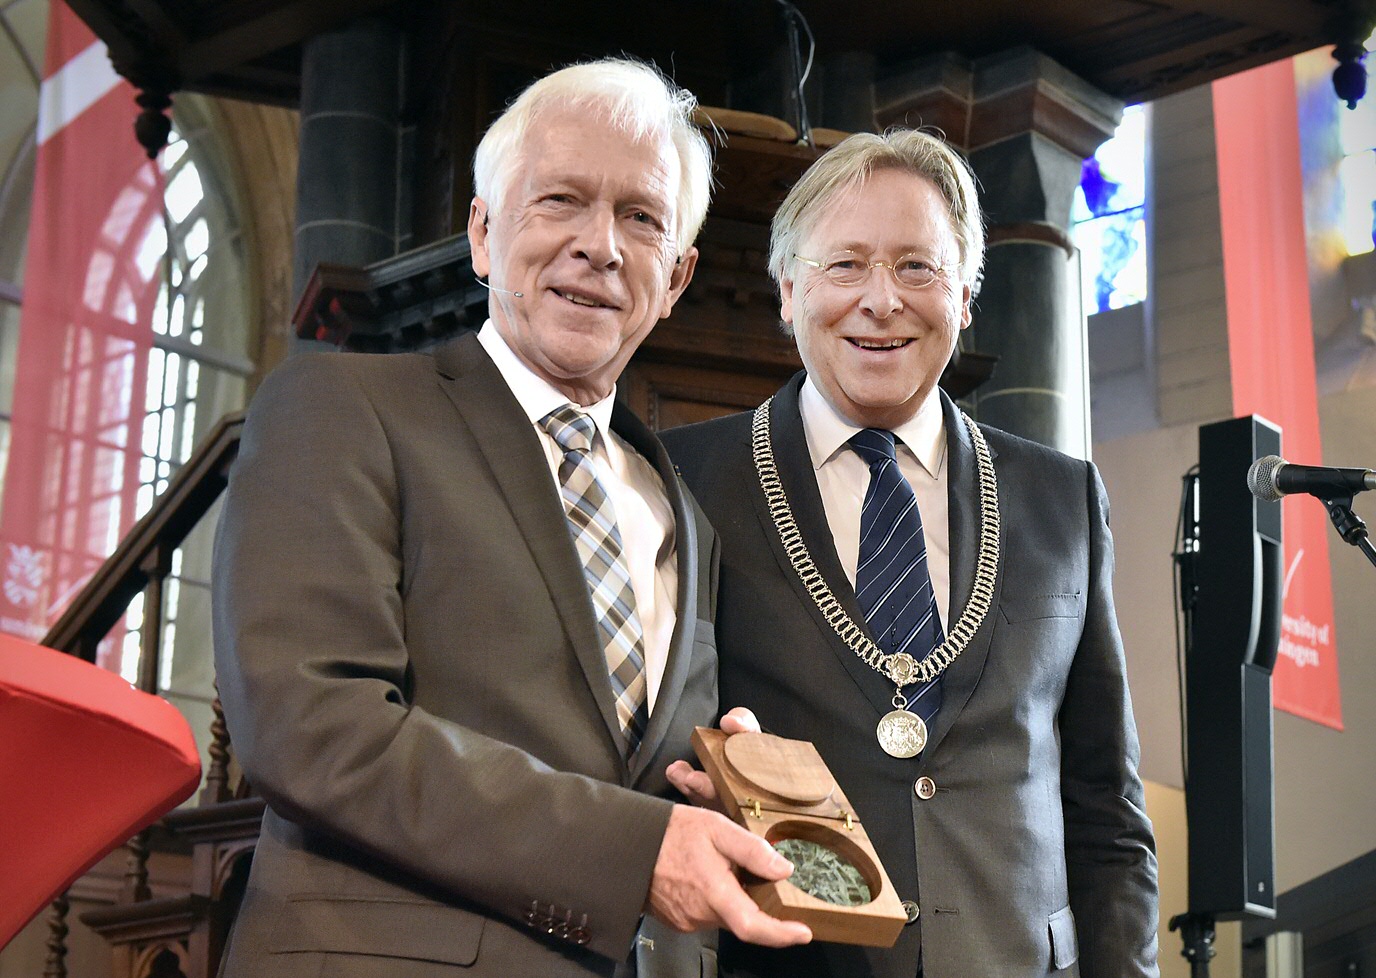 Van burgemeester Den Oudsten ontving Sibrand Poppema de erepenning van de stad GroningenSibrand Poppema and Mayor of Groningen Den Oudsten